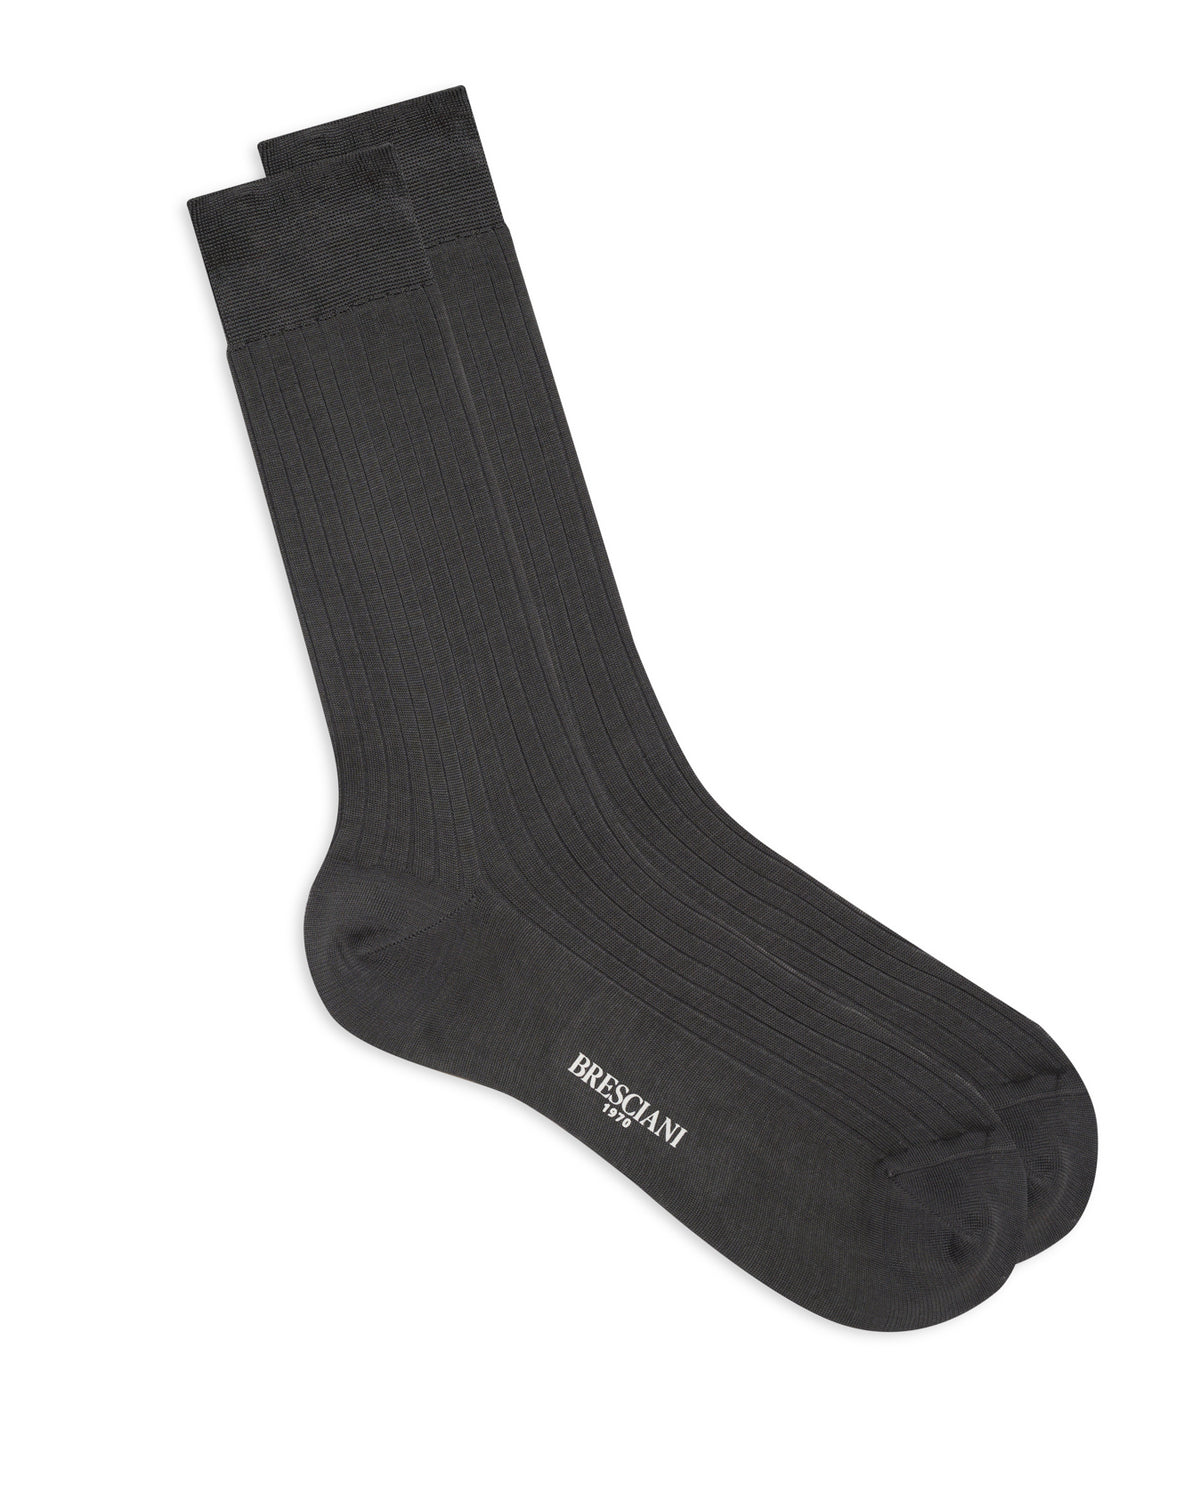 Ribbed Calf Length Socks - Medium Grey